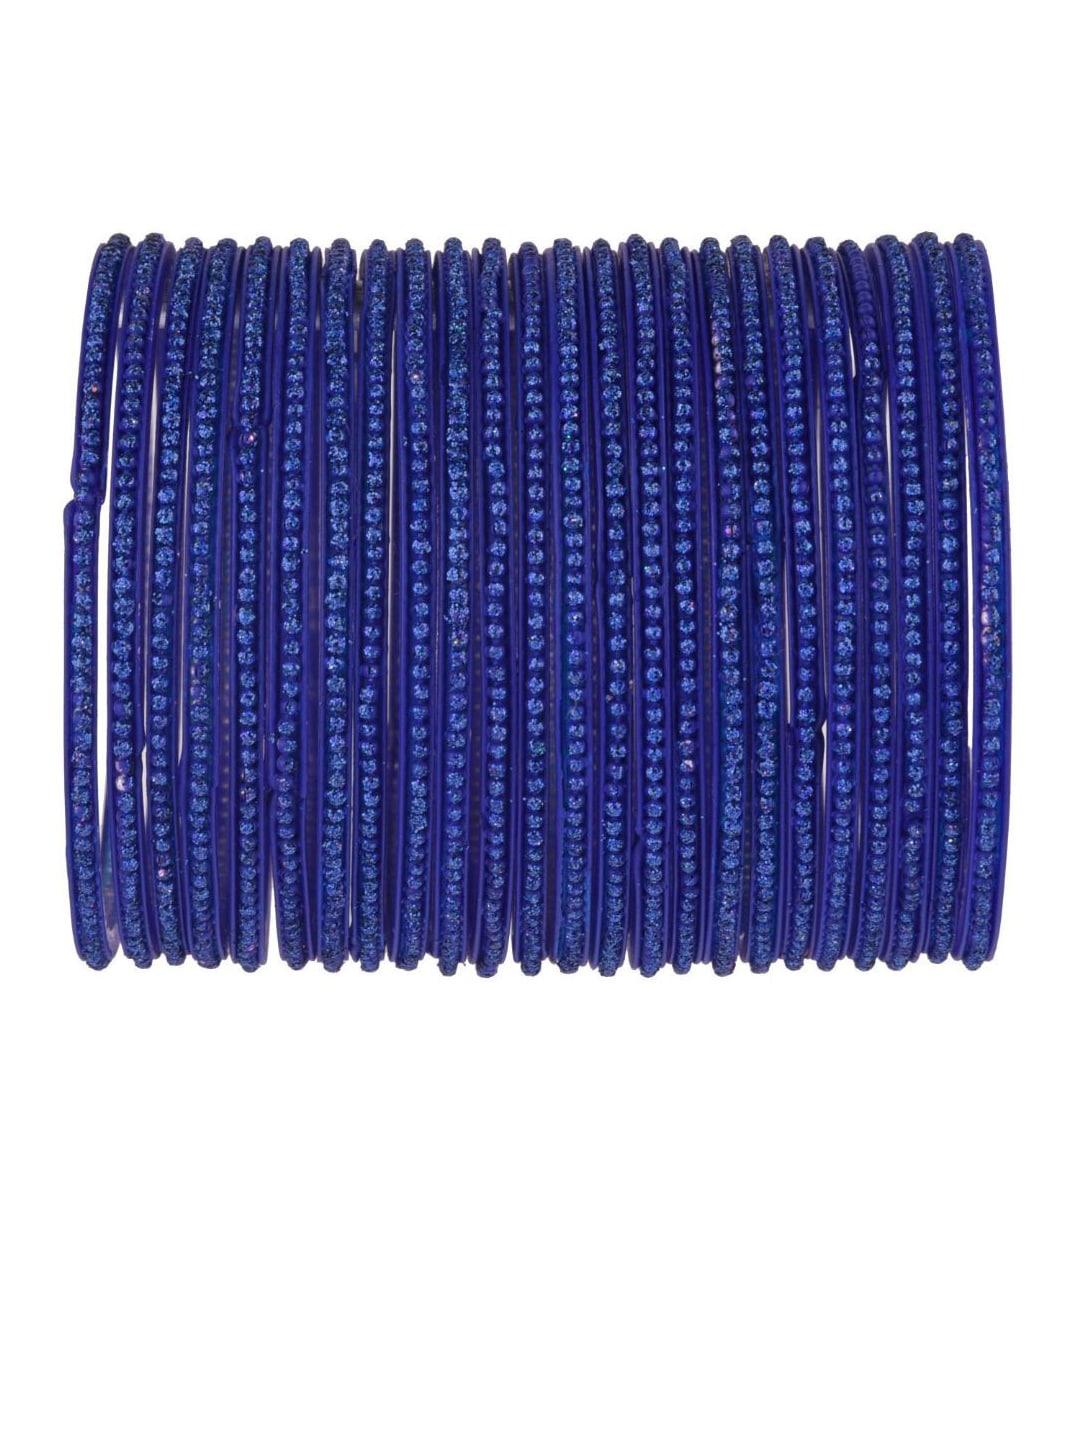 efulgenz set of 24 navy blue stone-studded bangles